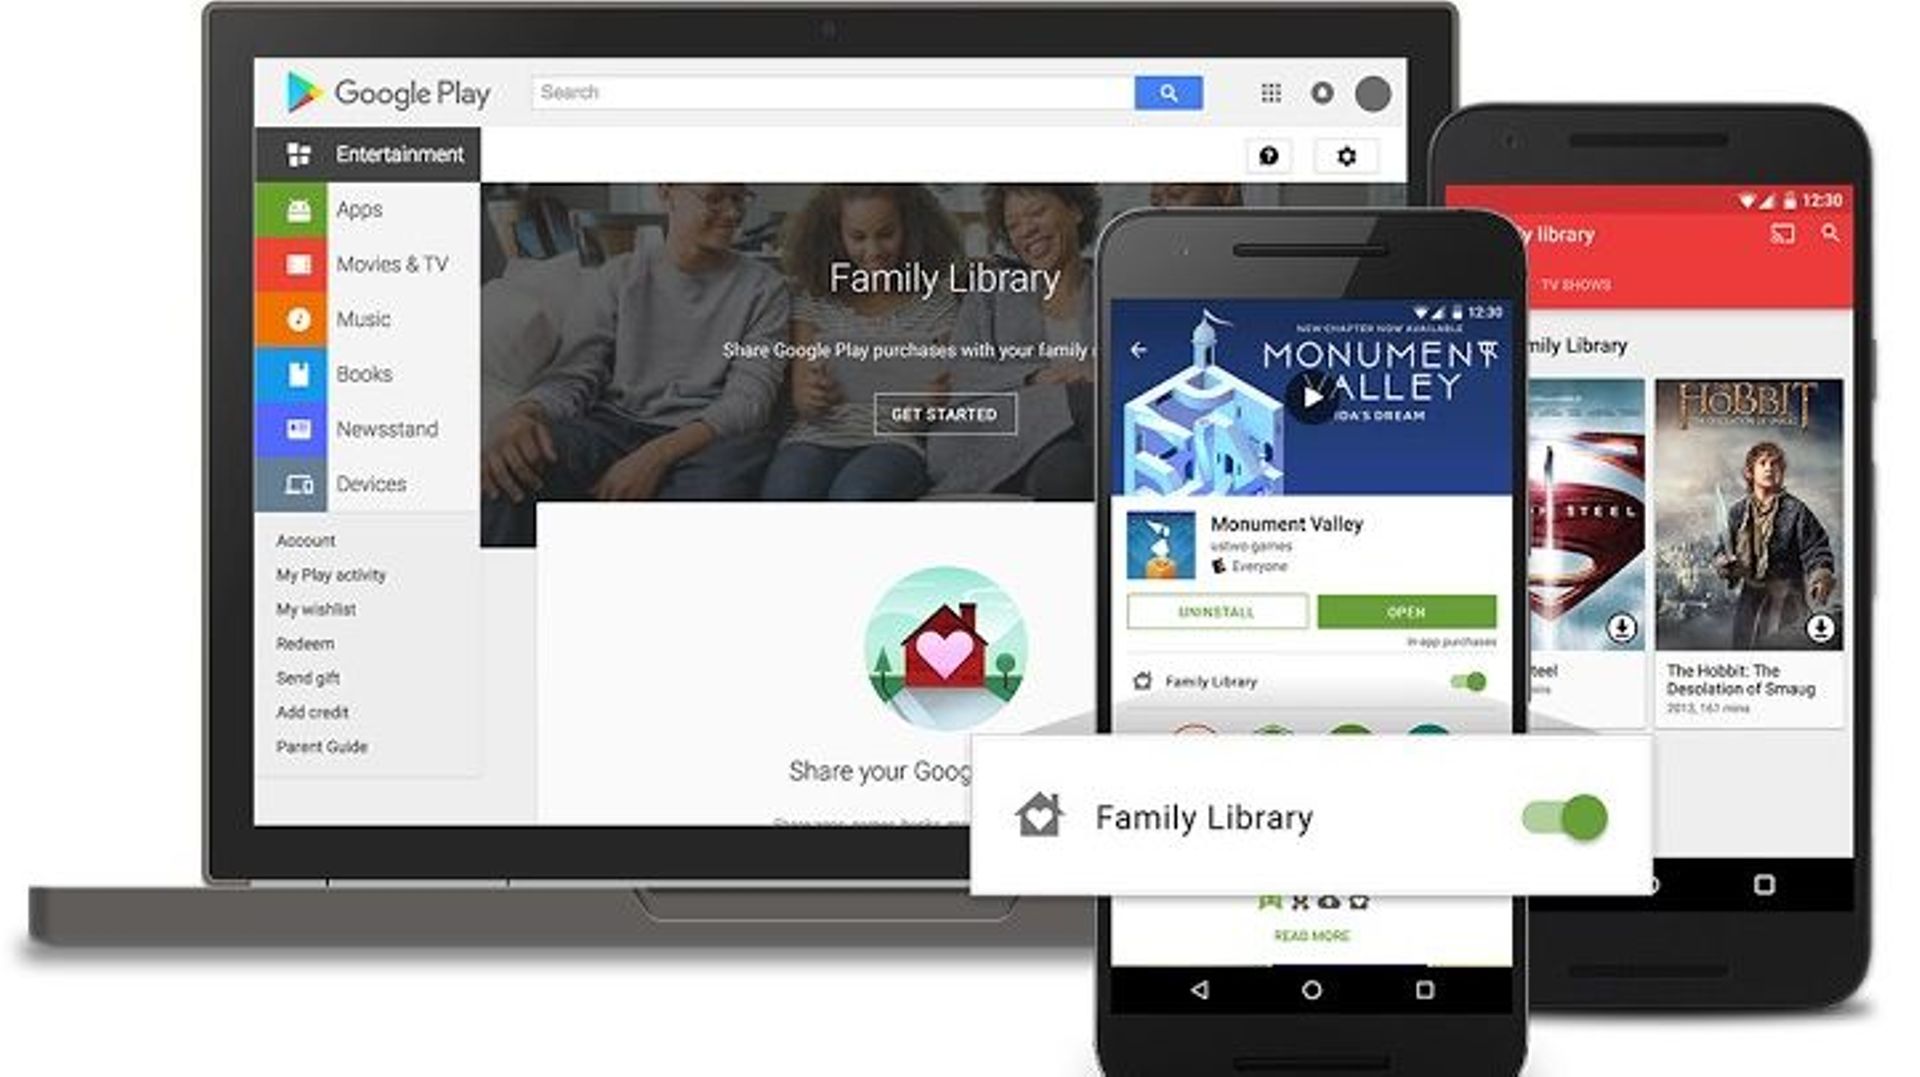 Google Play Family Library permet aux membres d'un groupe de partager des contenus achetés.